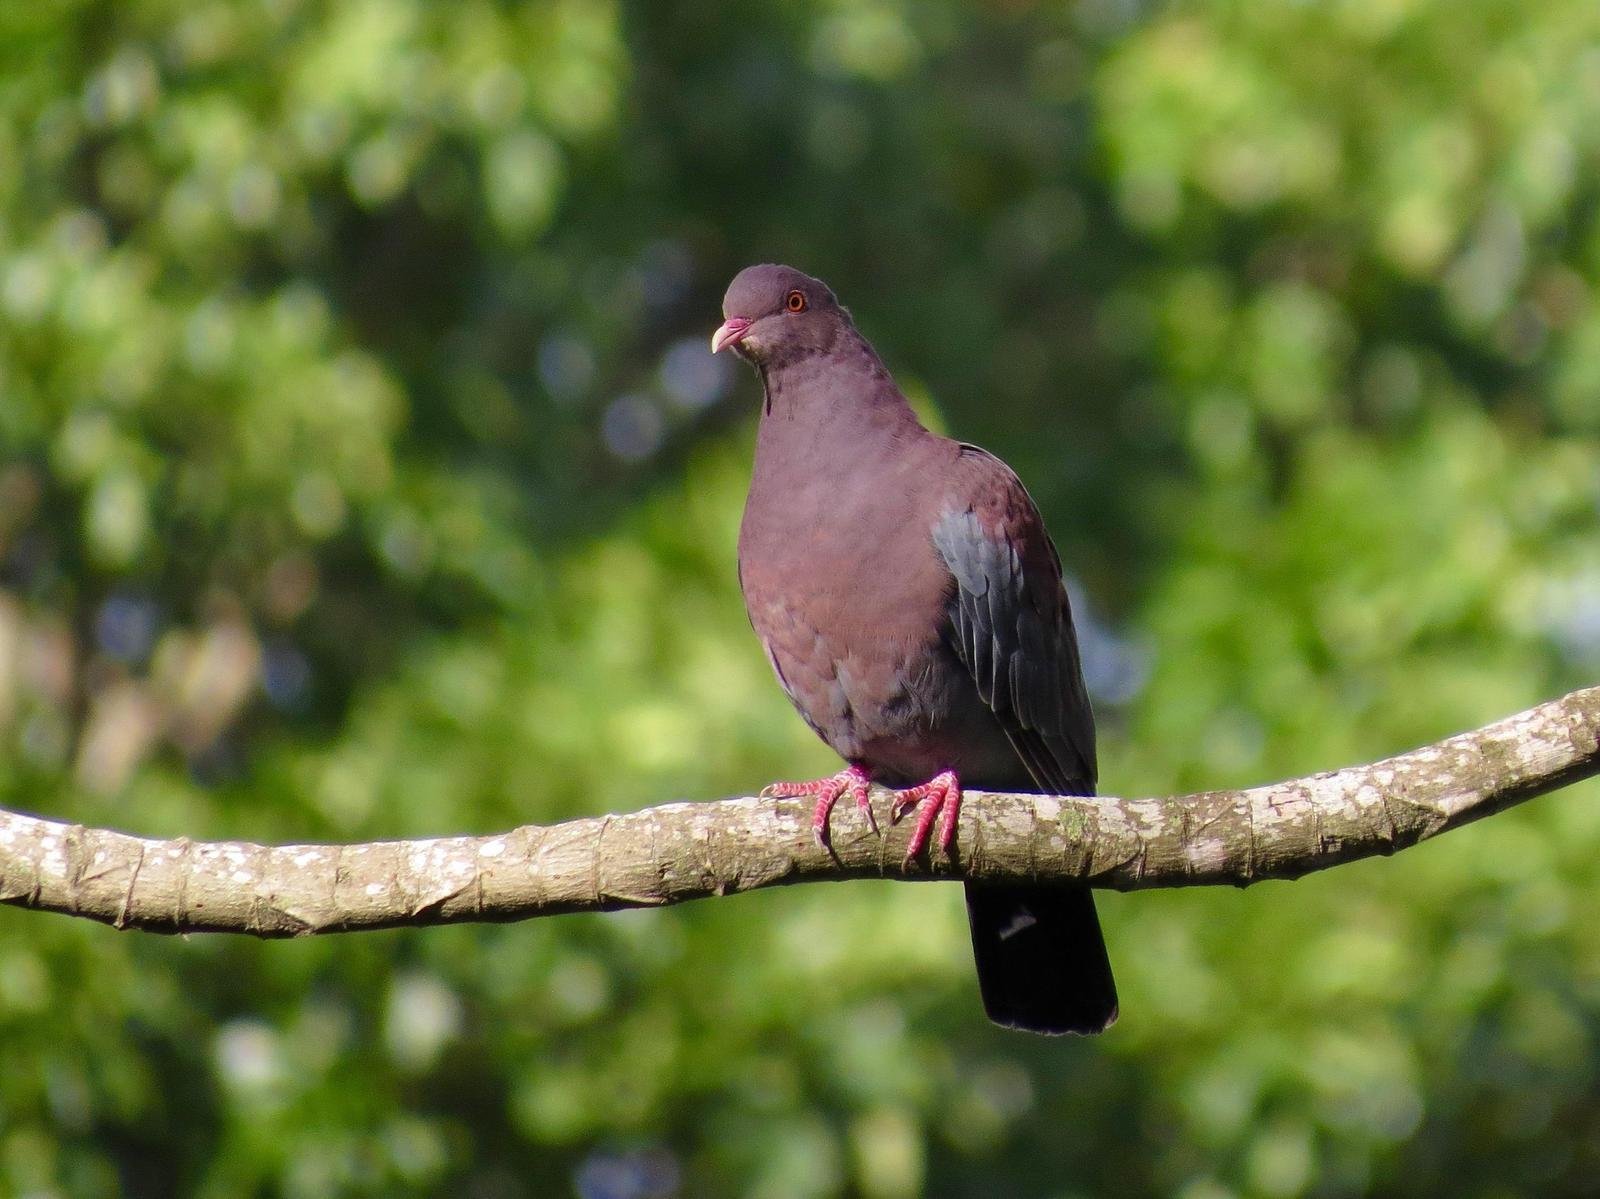 Red-billed Pigeon Photo by John van Dort